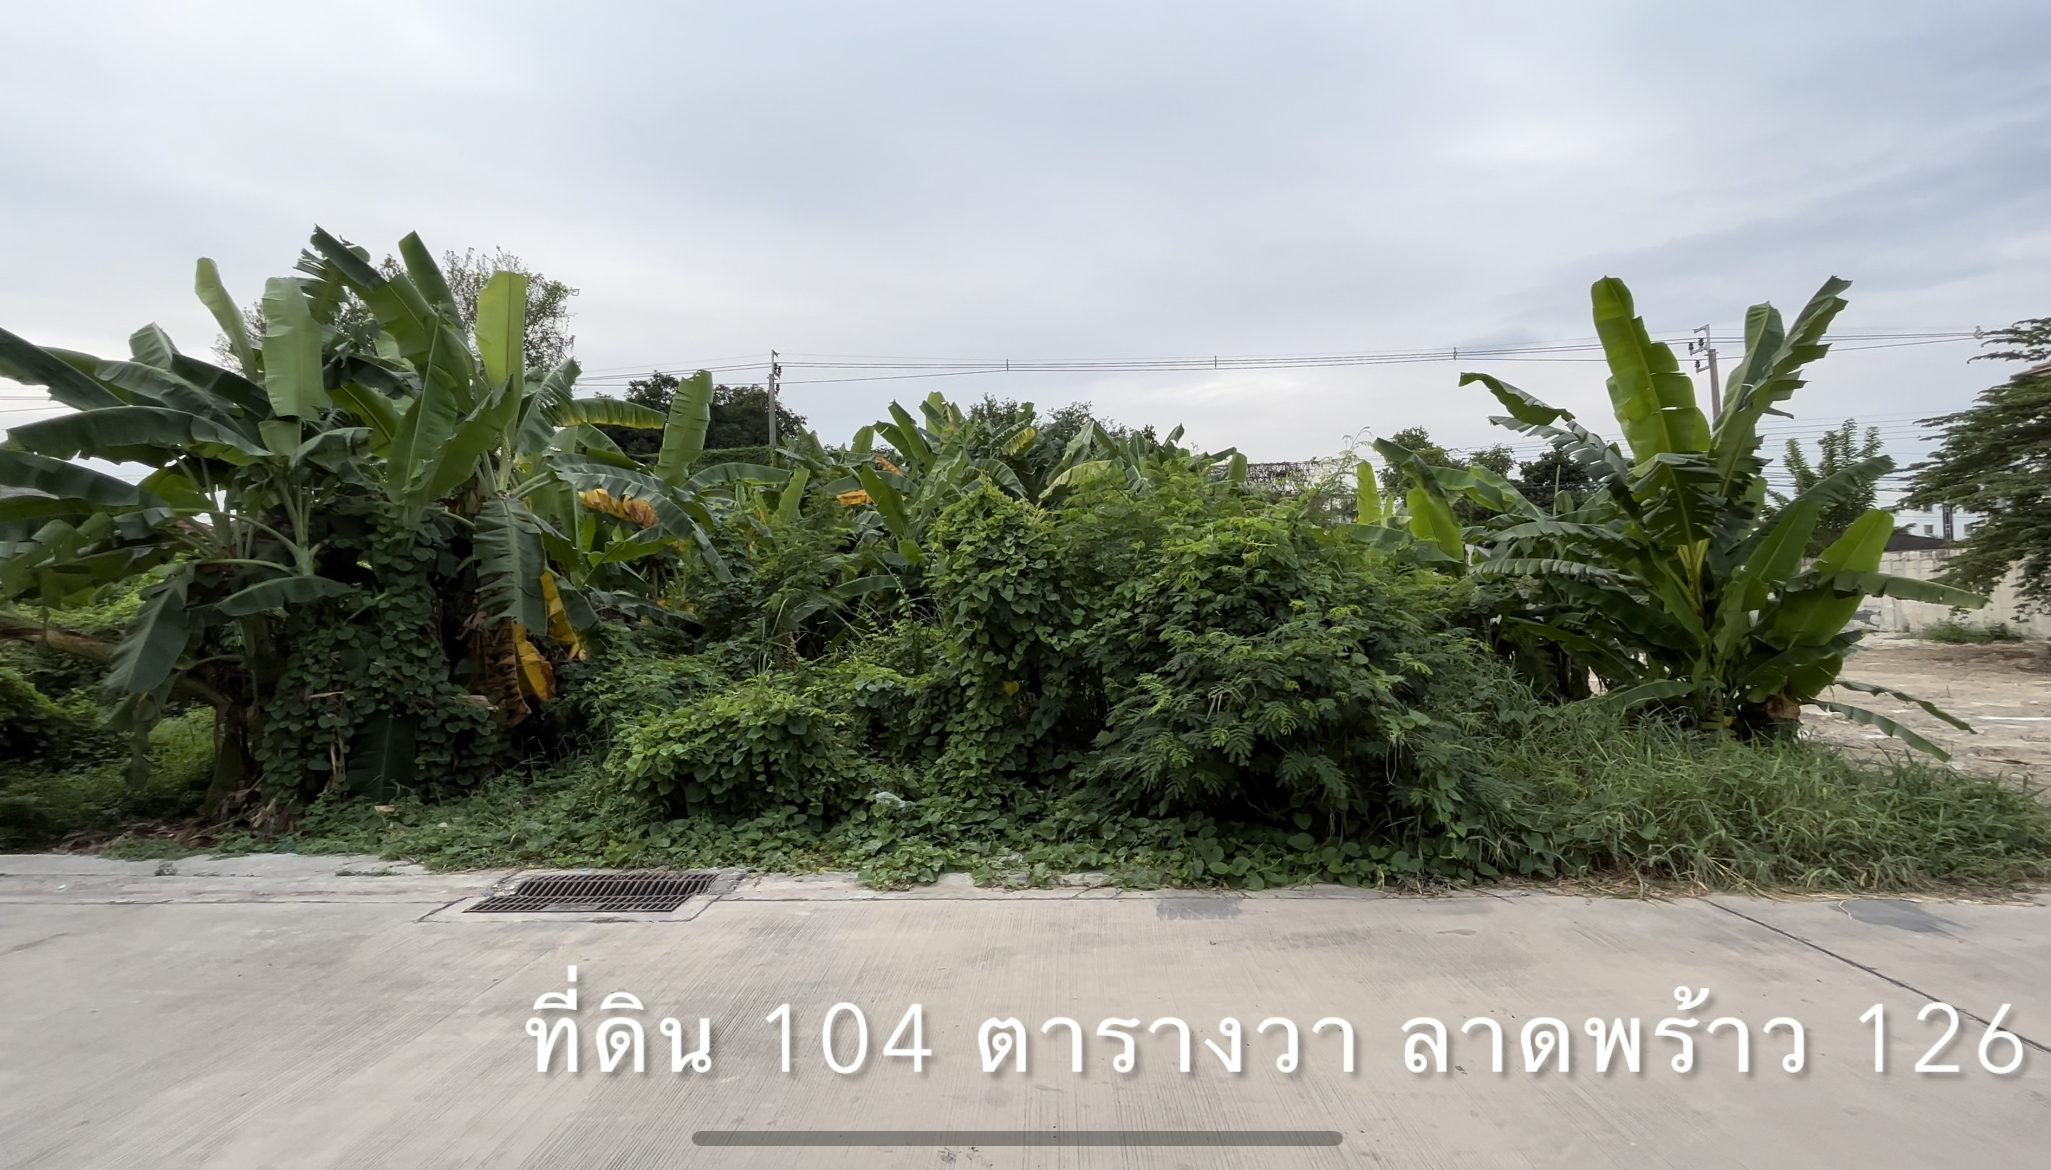 ที่ดิน 104 ตารางวา, ลาดพร้าว 126, ลาดพร้าว 122 แยก 9 (มหาดไทย รามคำแหง 65) เพียงตารางวาละ 75,000.-